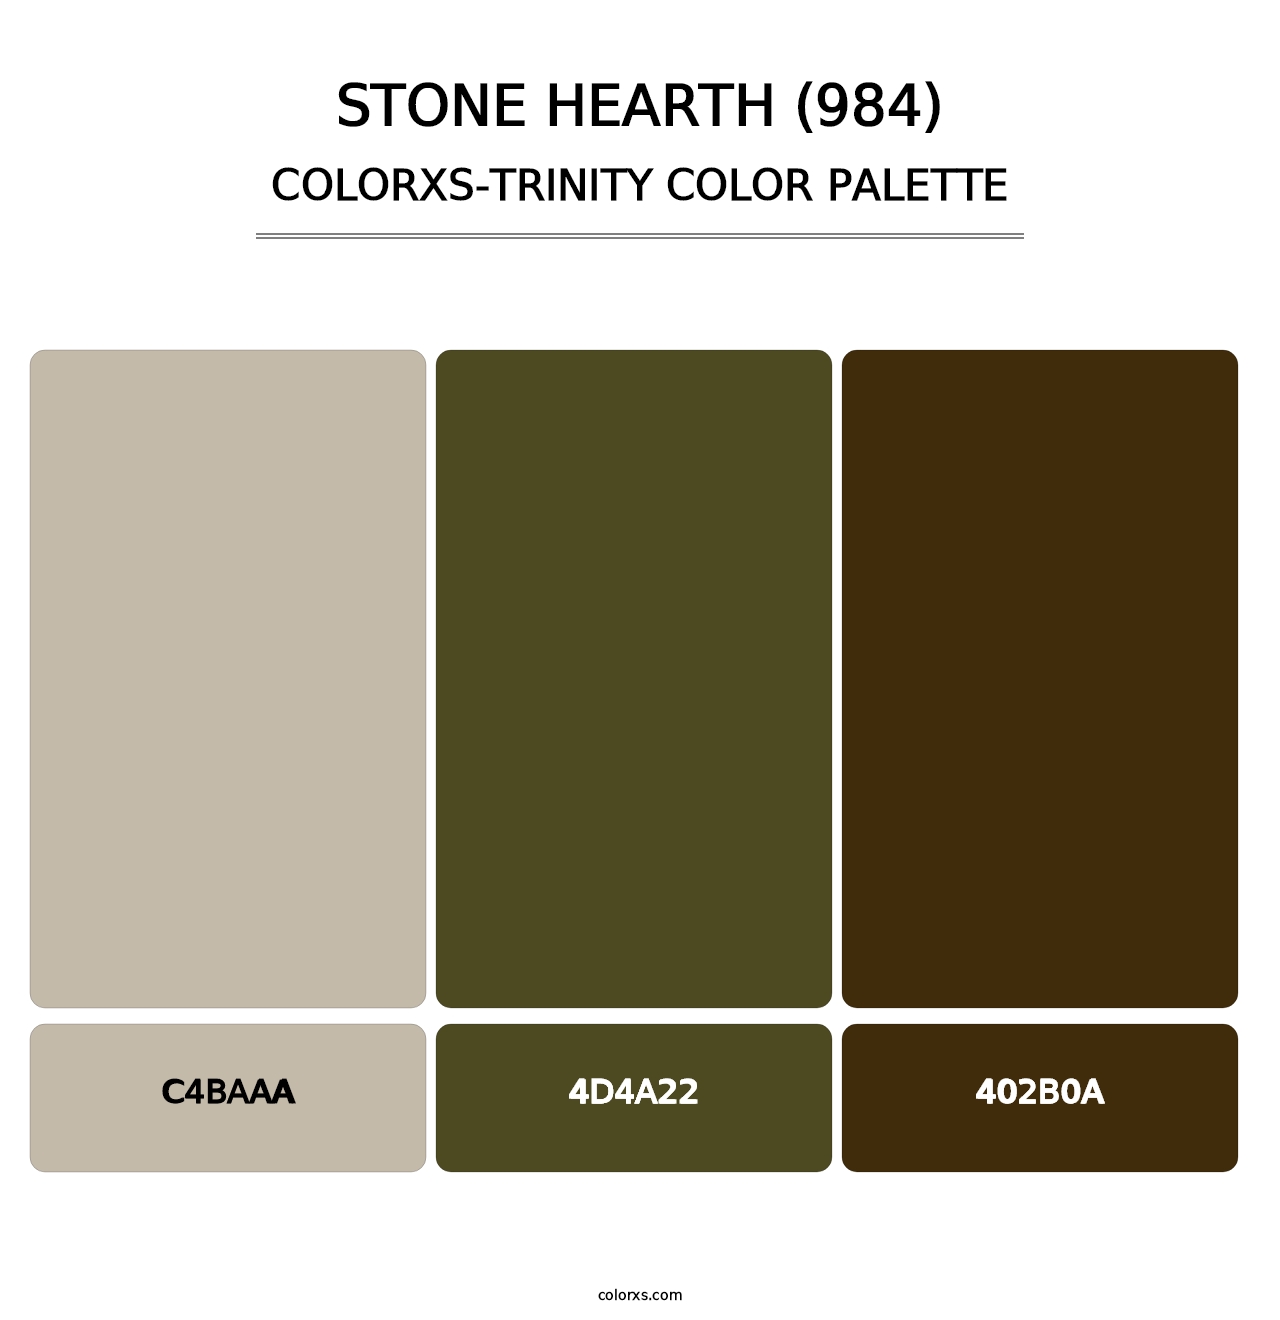 Stone Hearth (984) - Colorxs Trinity Palette